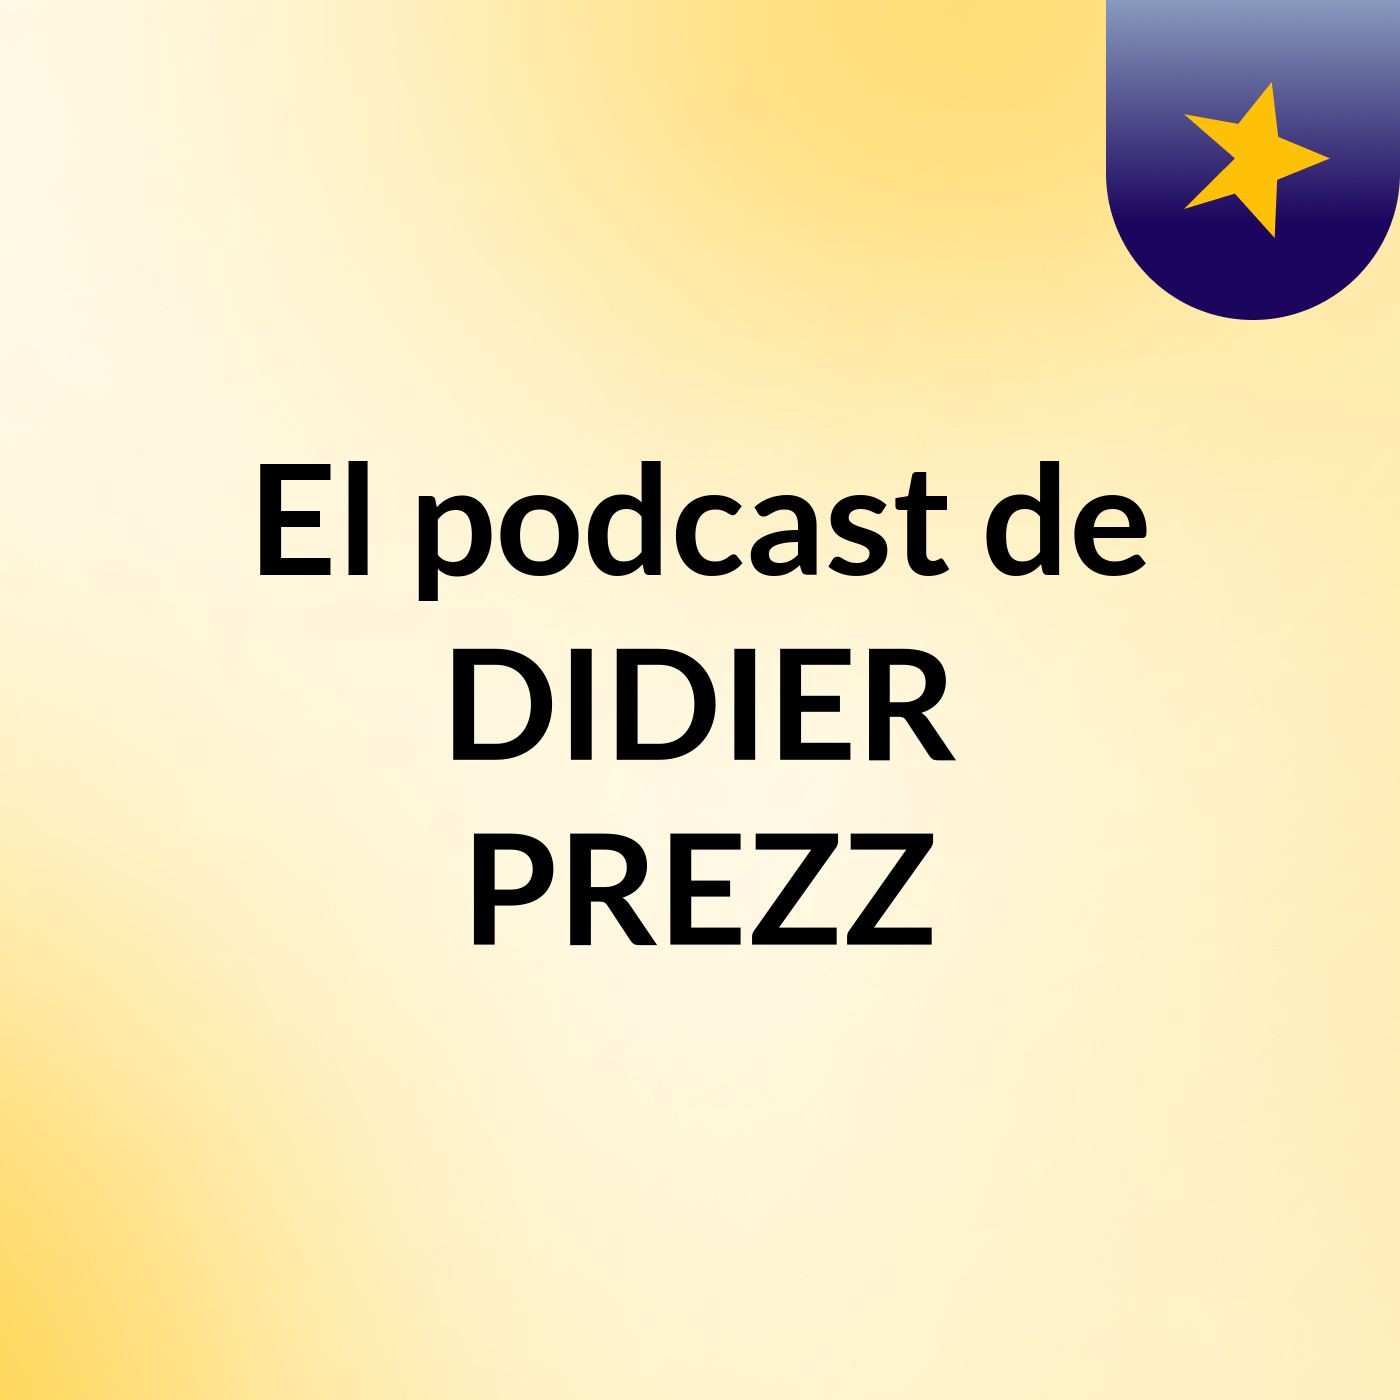 El podcast de DIDIER PREZZ